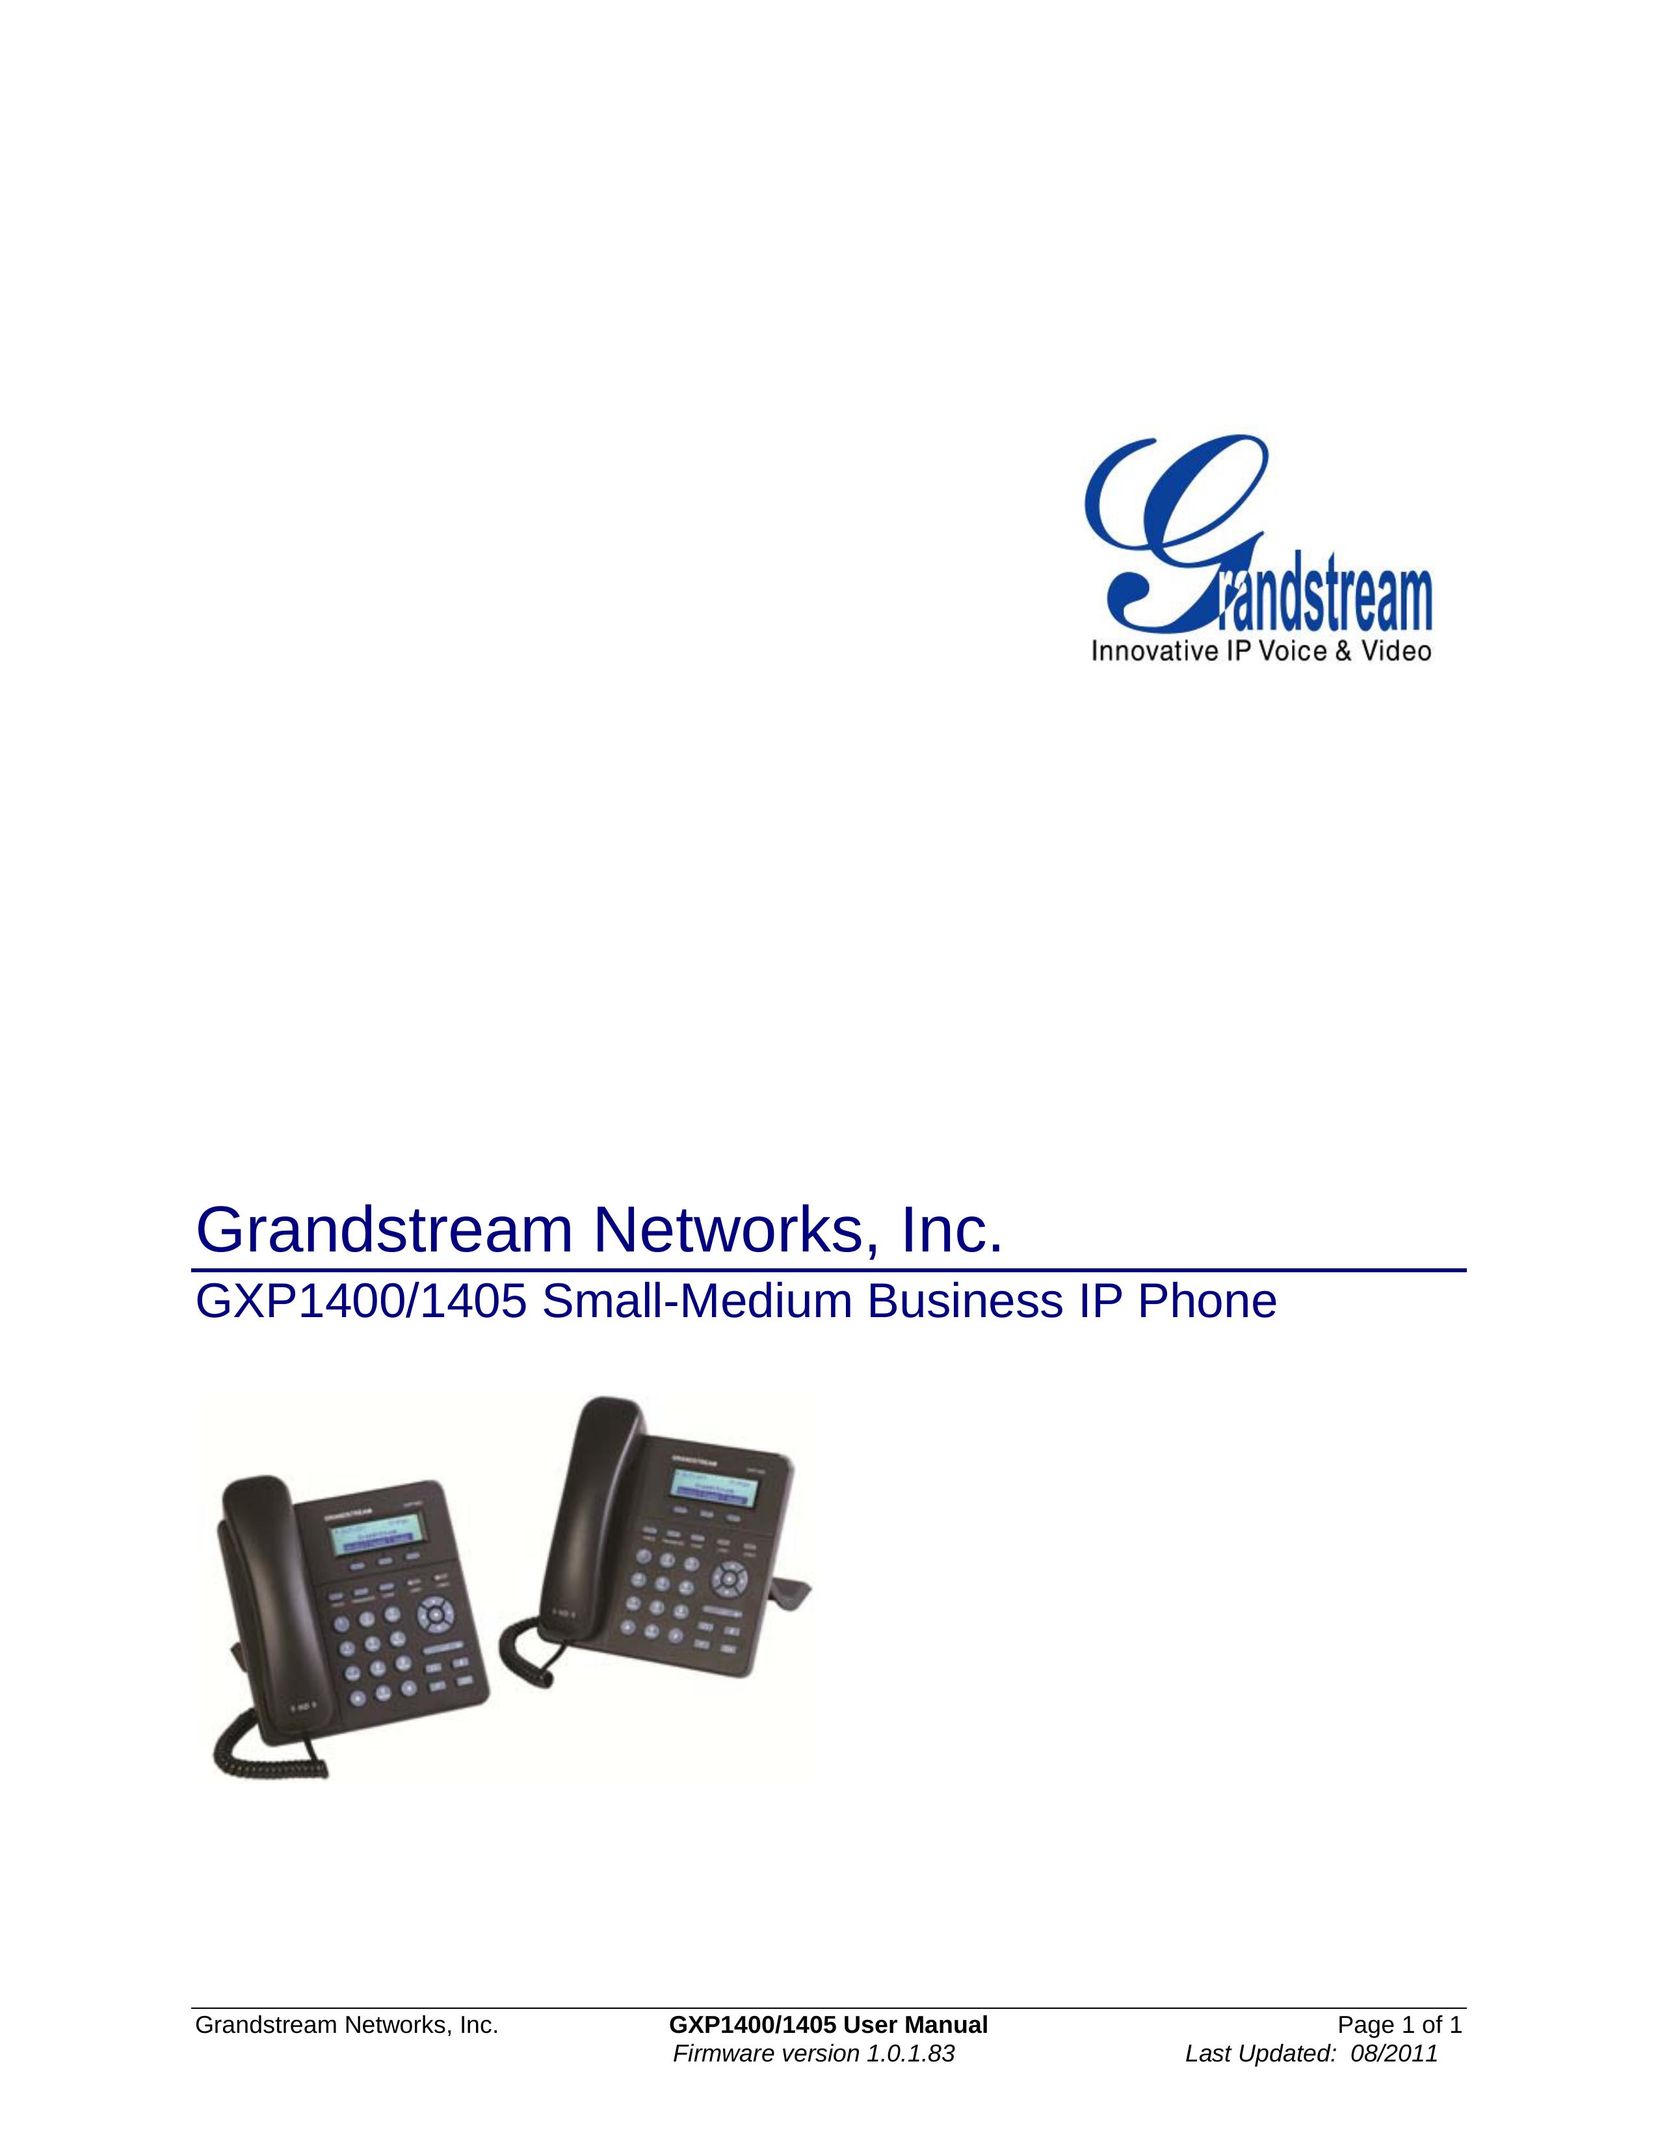 Grandstream Networks GXP1405 IP Phone User Manual